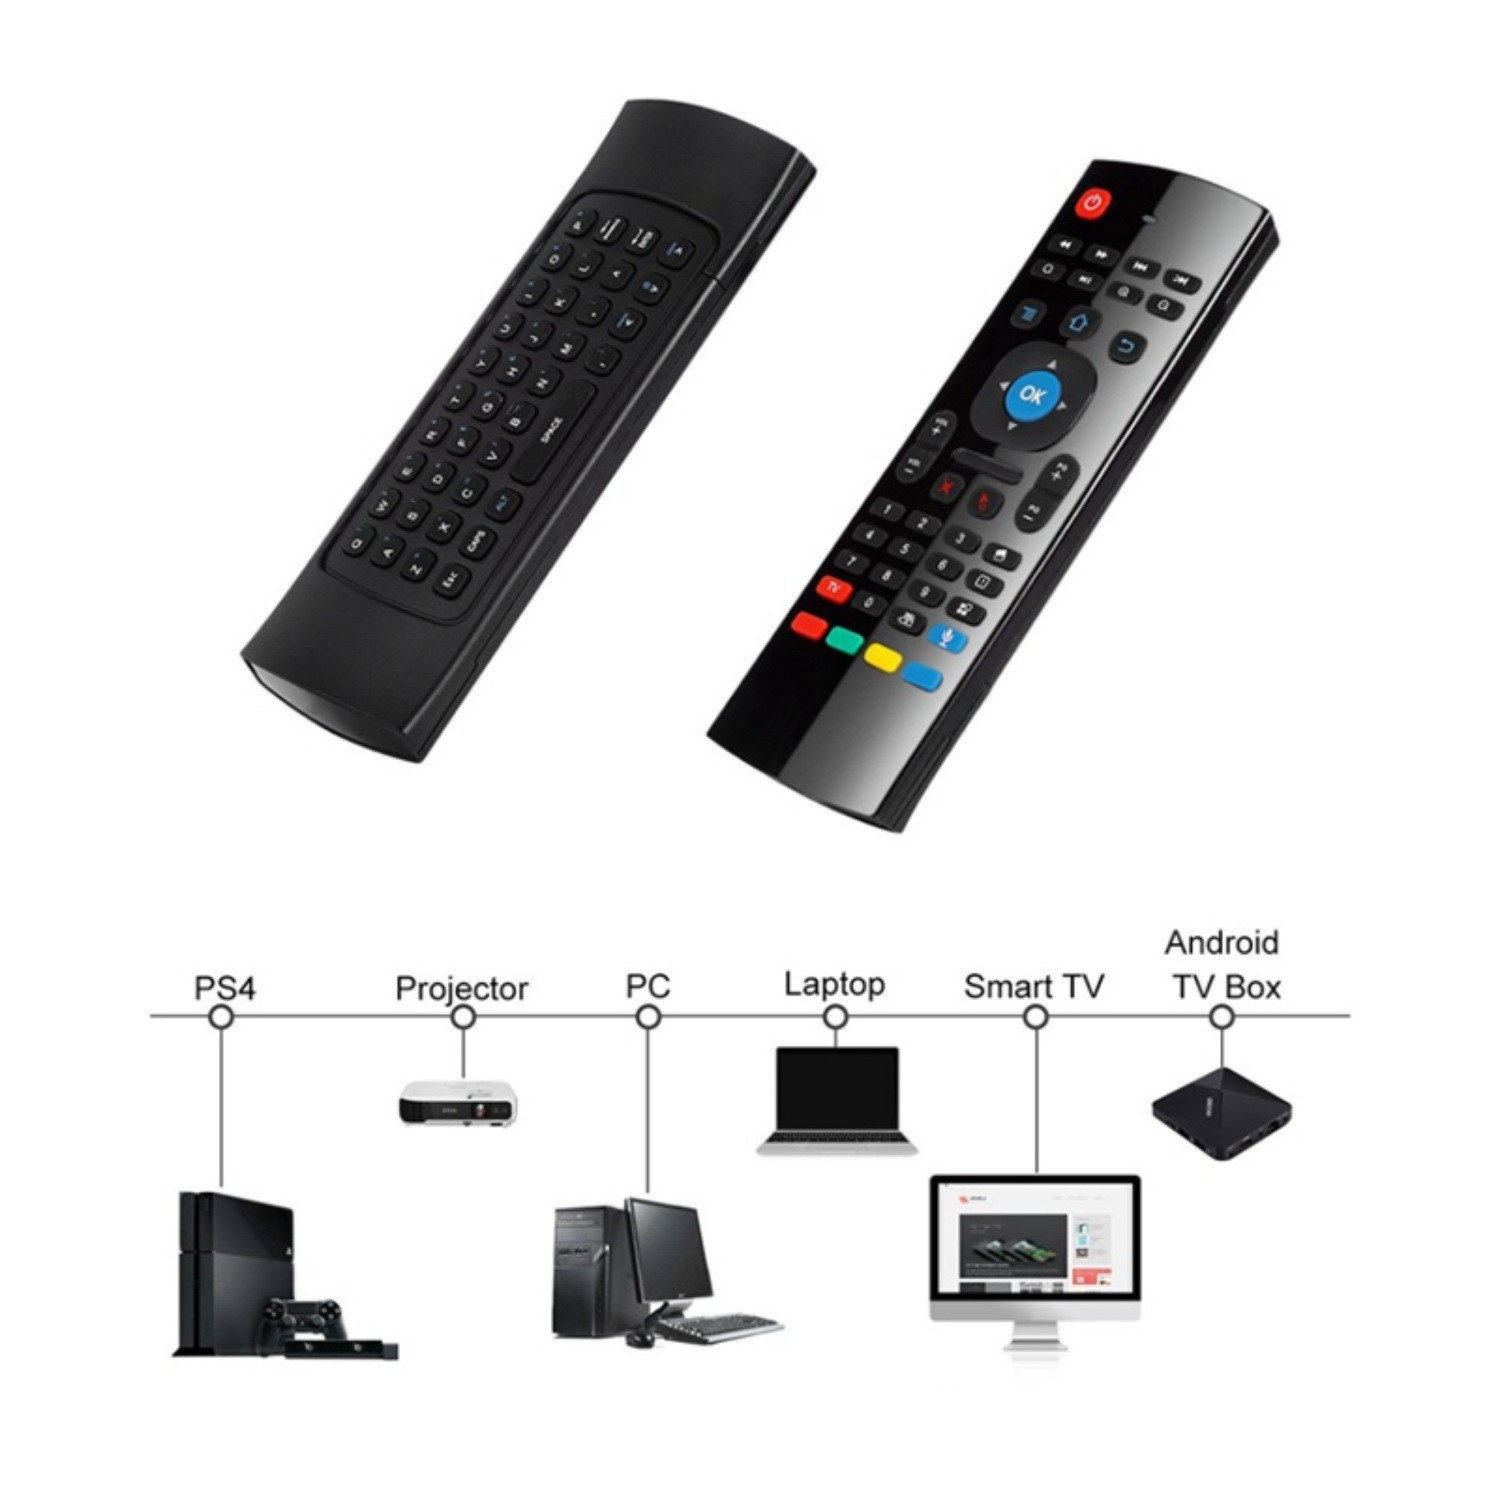 ps4 remote smart tv